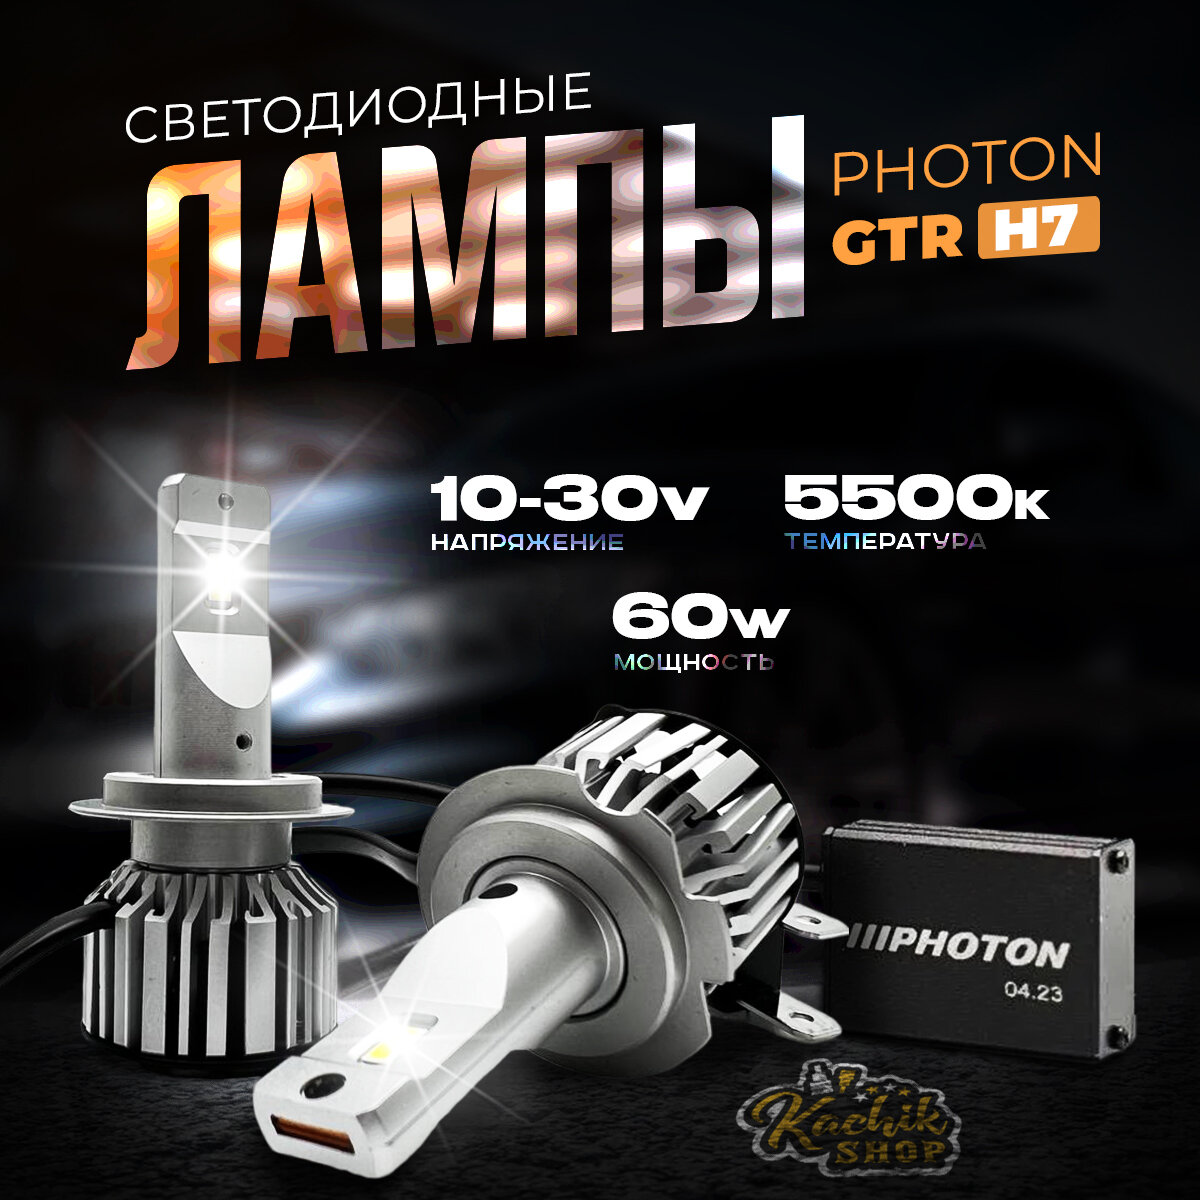 Светодиодные автомобильные лампы LED PHOTON GTR H7. 10-30V 60W 5500K 2шт.